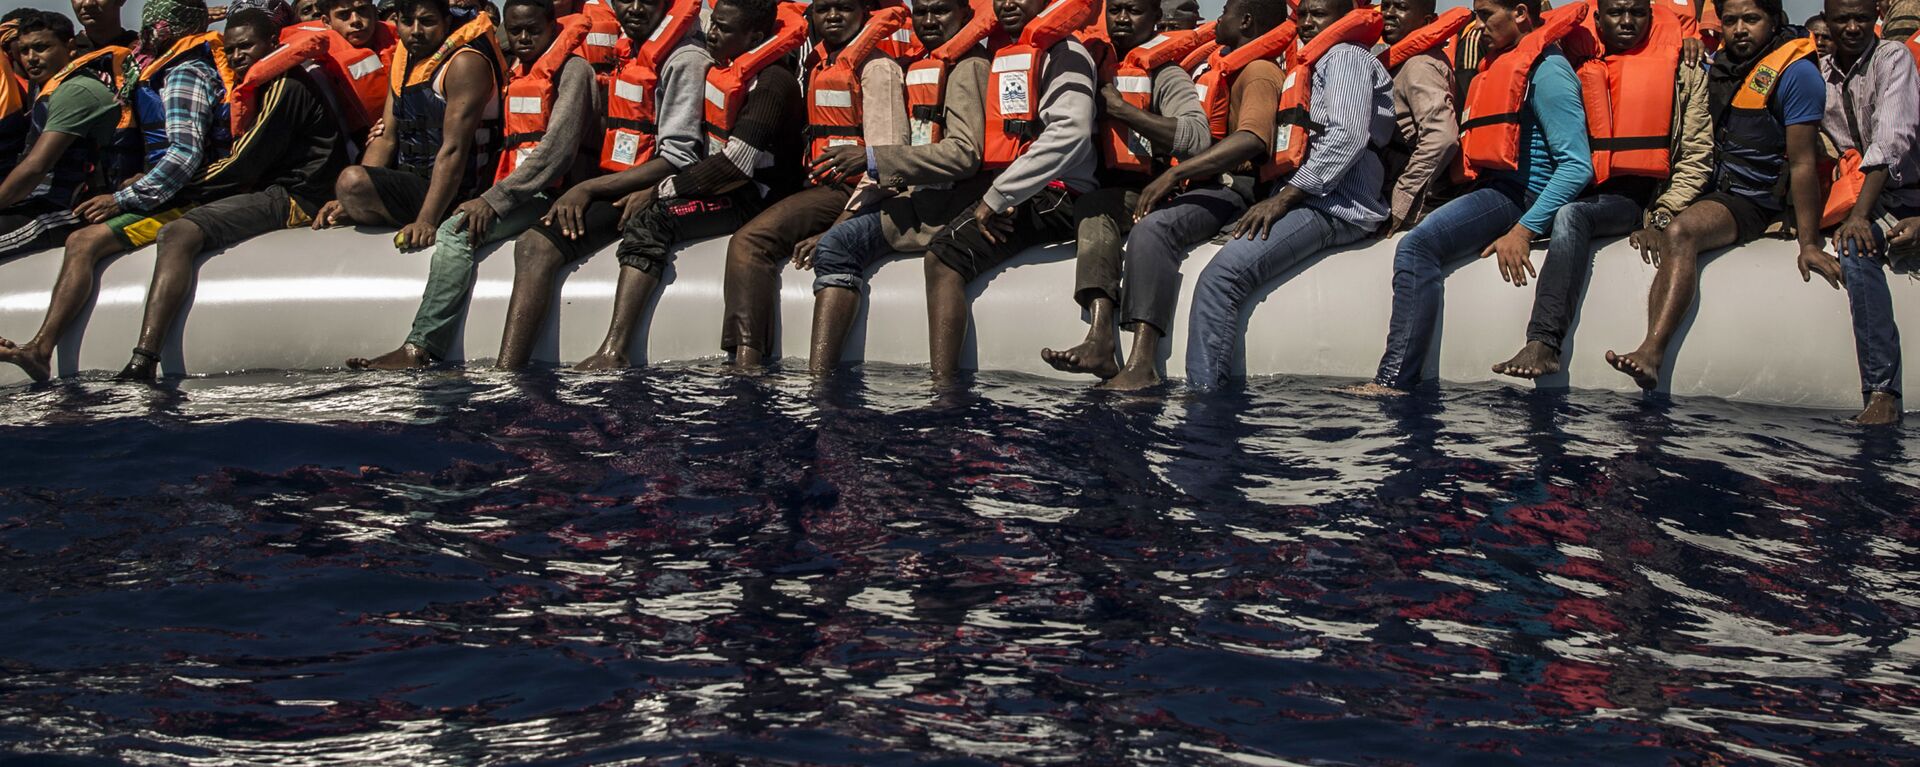 لاجئون من إرتيريا ومالي وبنغلادش (ودول أخرى) ينتظرون قارب نجاة في البحر الأبيض المتوسط على بعد 27 كم من شواطئ ليبيا، يوليو/ تموز 2016 - سبوتنيك عربي, 1920, 22.05.2017